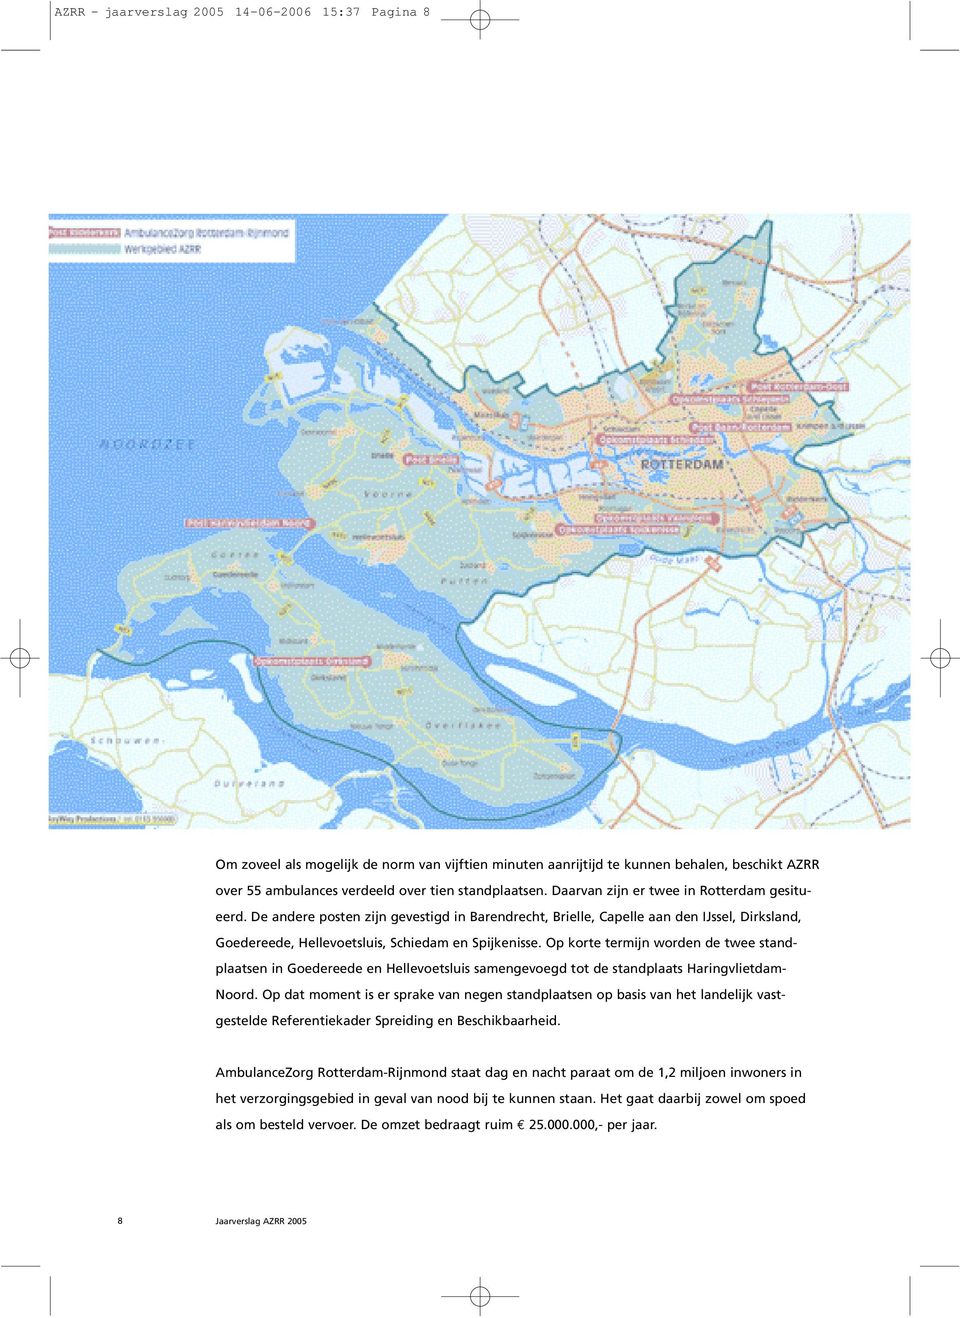 Op korte termijn worden de twee standplaatsen in Goedereede en Hellevoetsluis samengevoegd tot de standplaats Haringvlietdam- Noord.